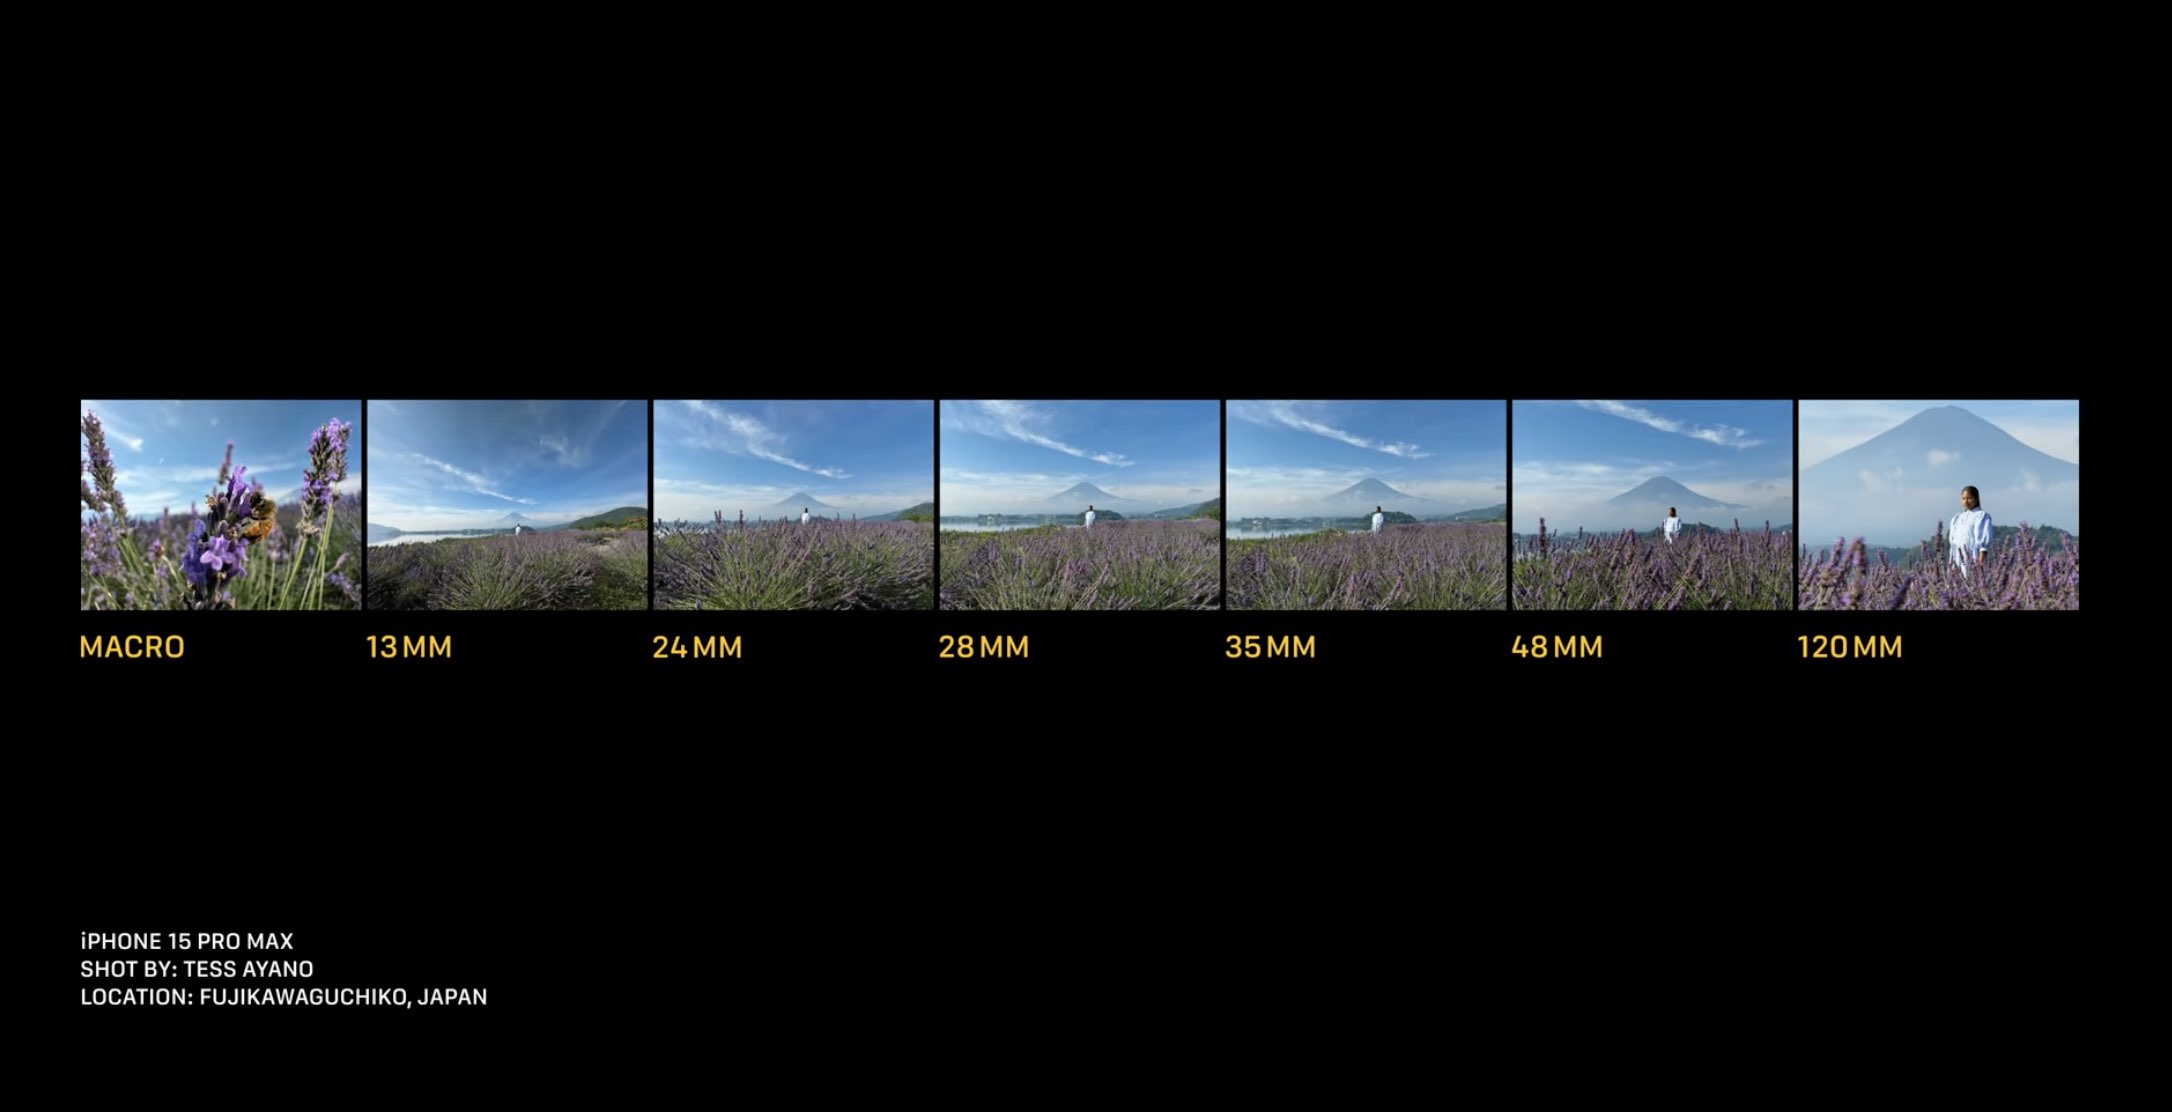 Tiêu cự và zoom của camera iPhone 15 so với camera 15 Pro